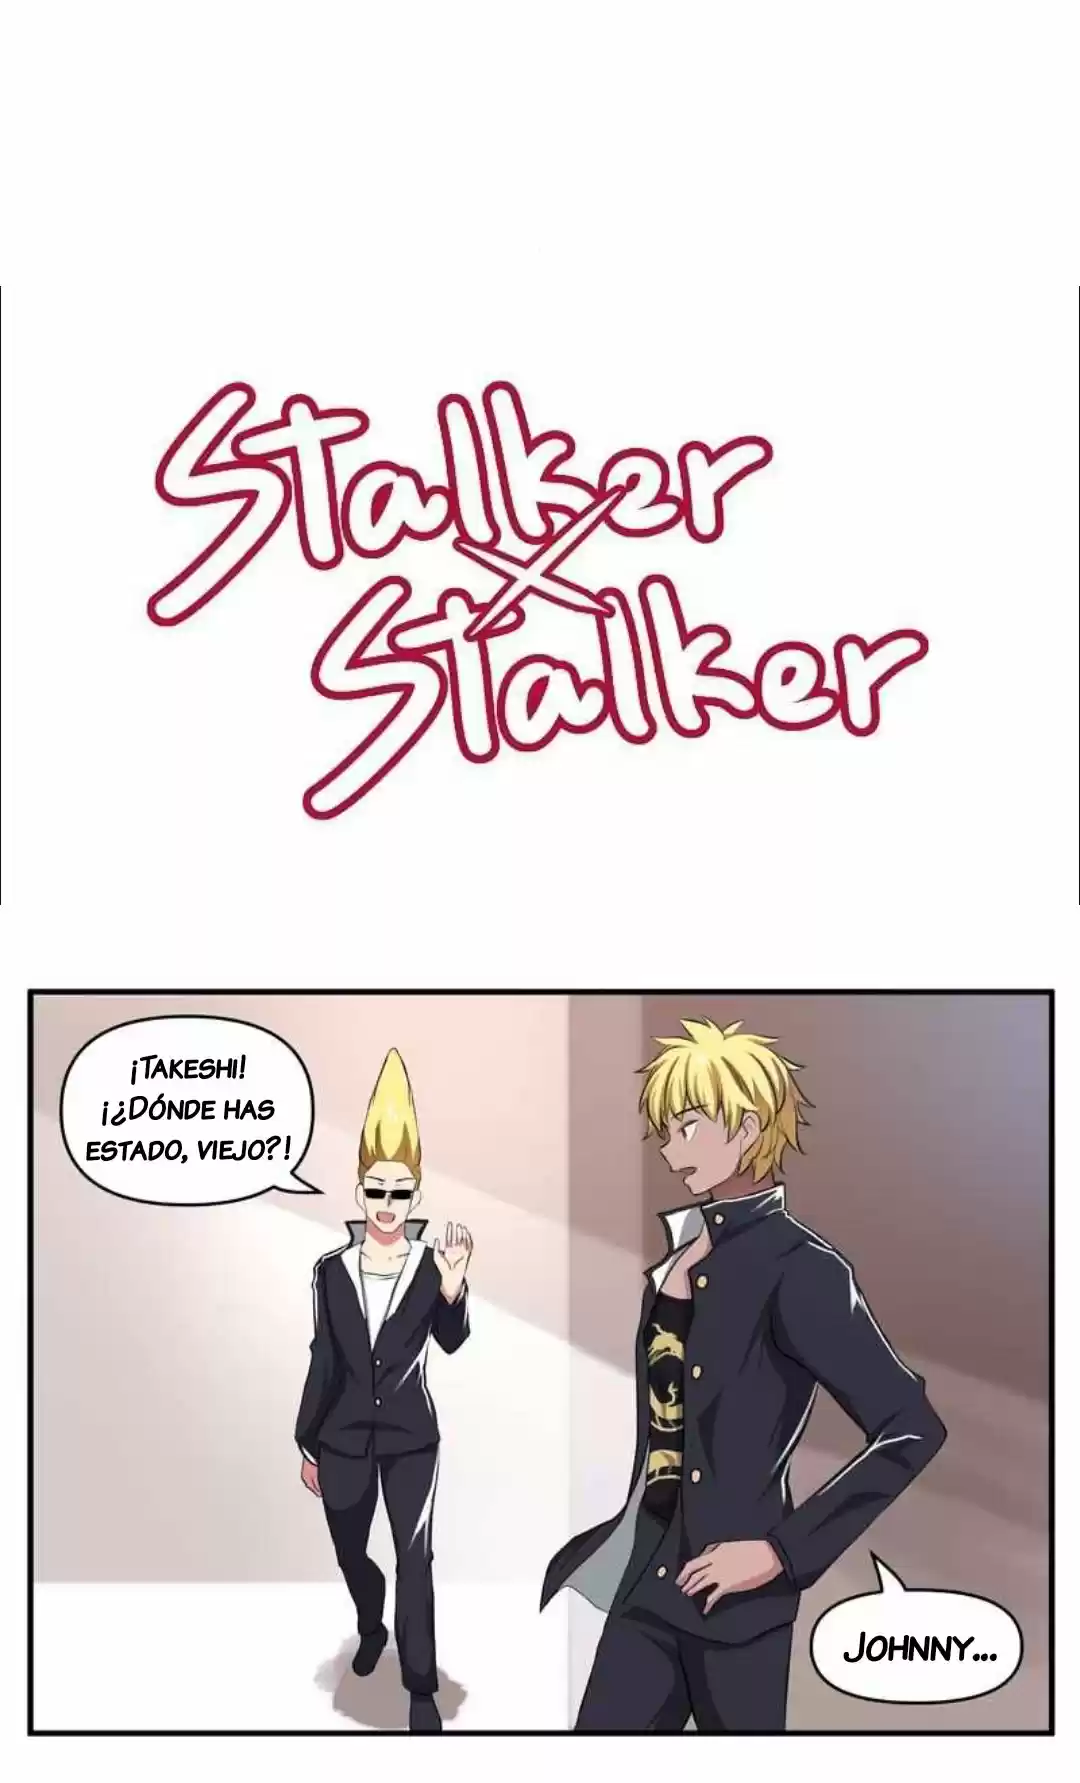 Stalker X Stalker: Chapter 81 - Page 1